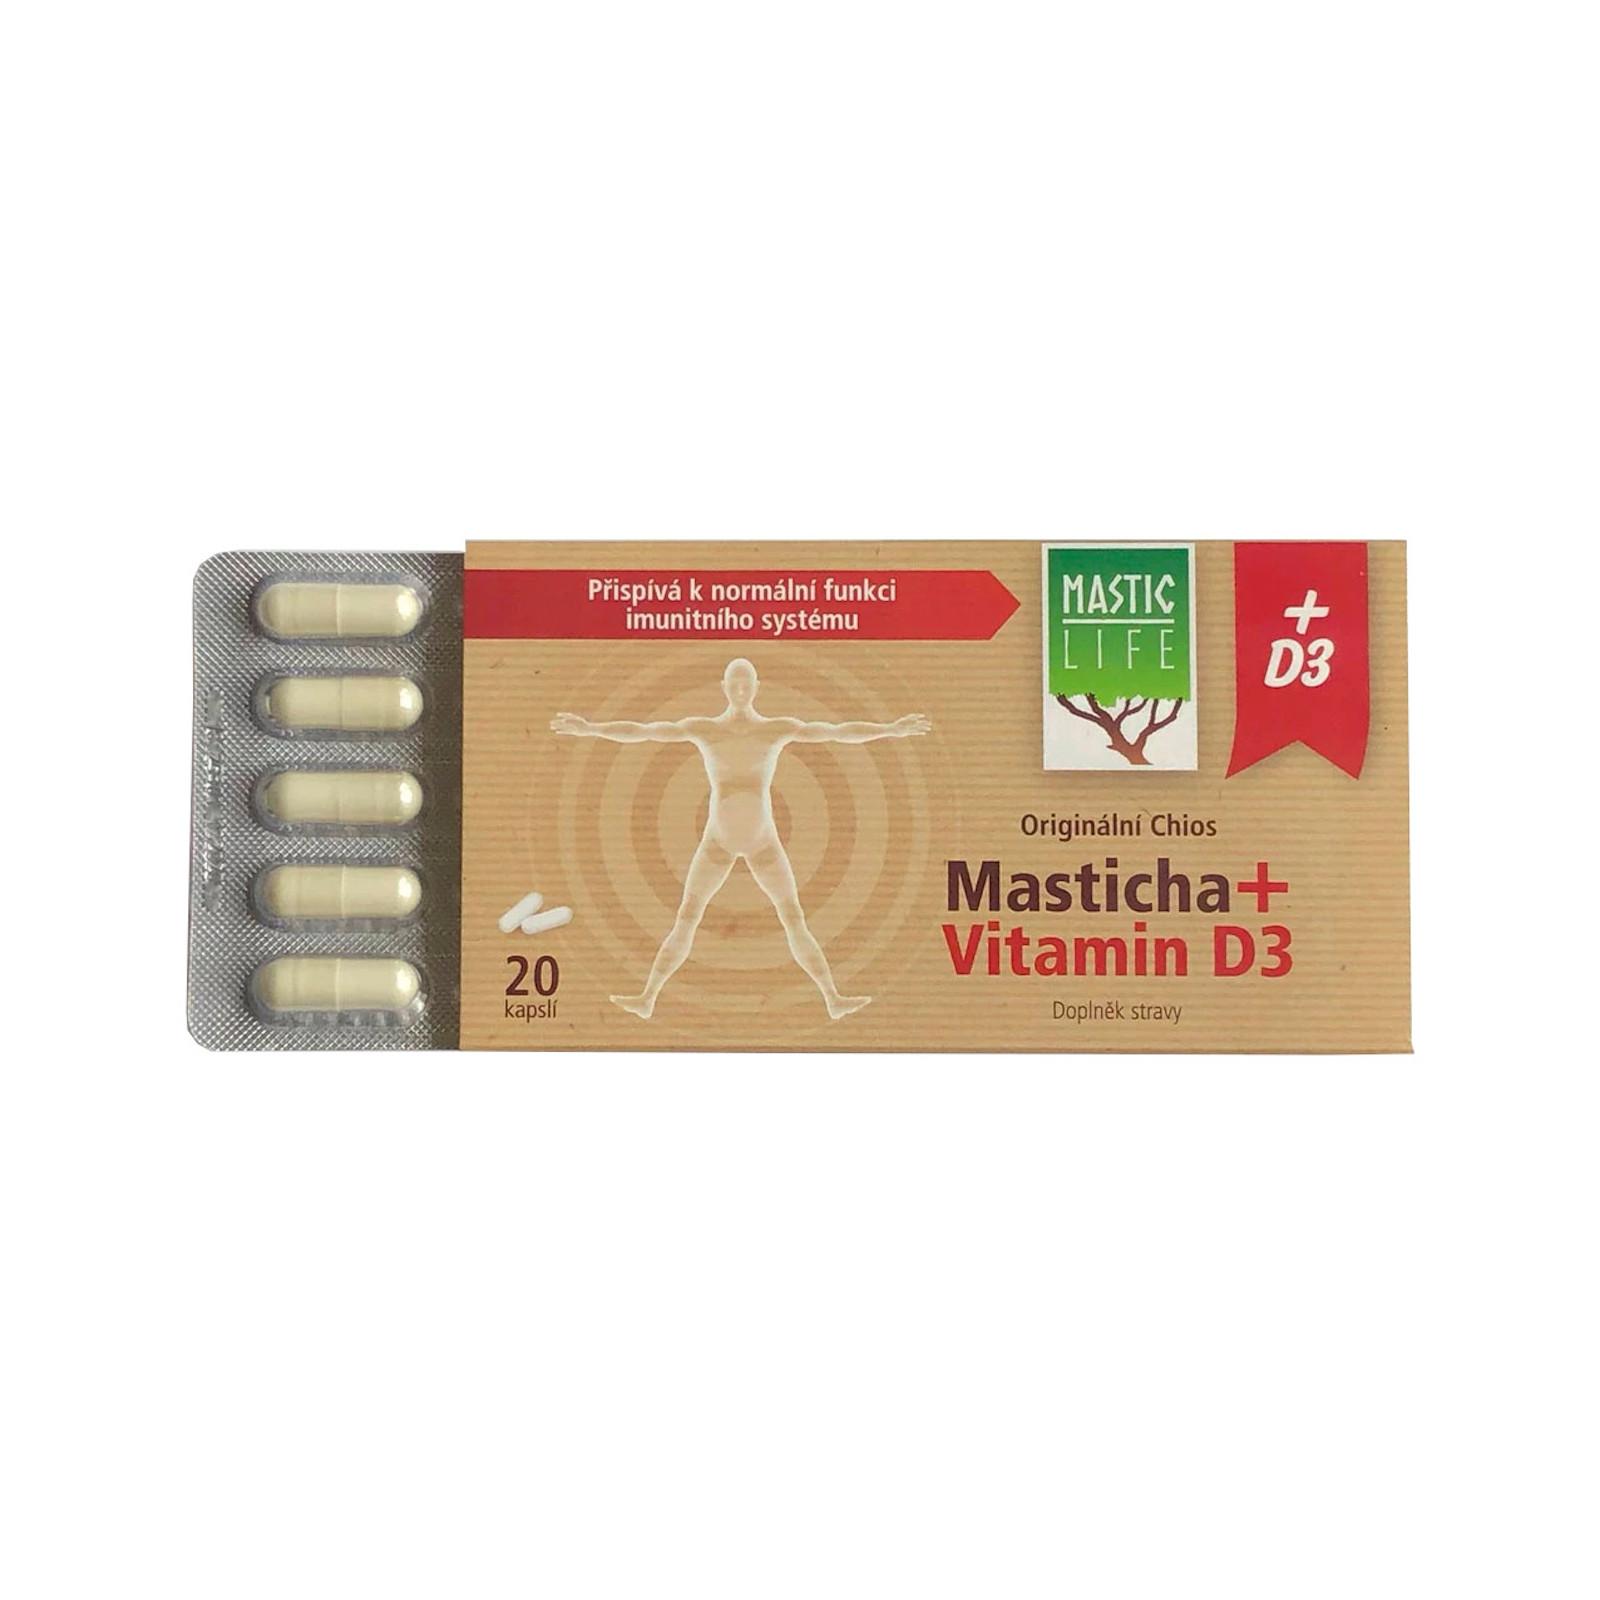 Original Chios Masticha + Vitamín D